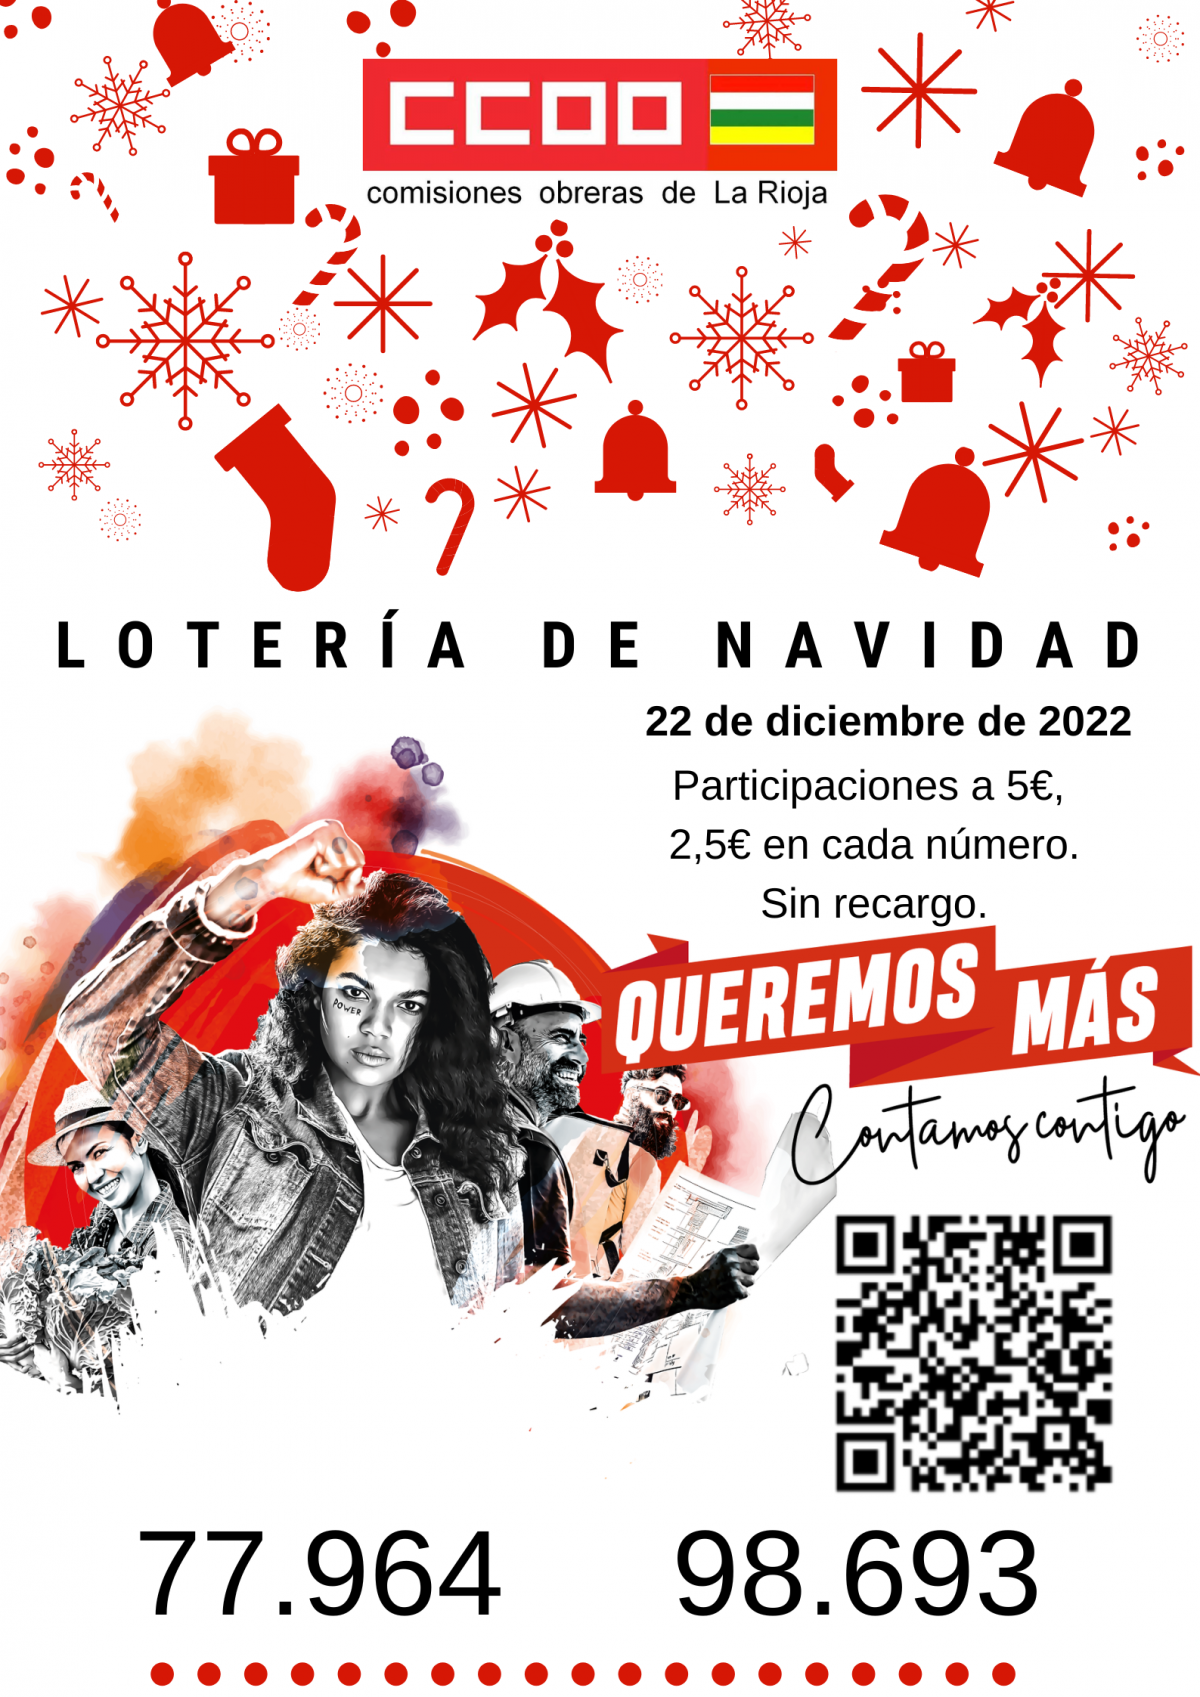 Lotería de Navidad La Rioja 2022